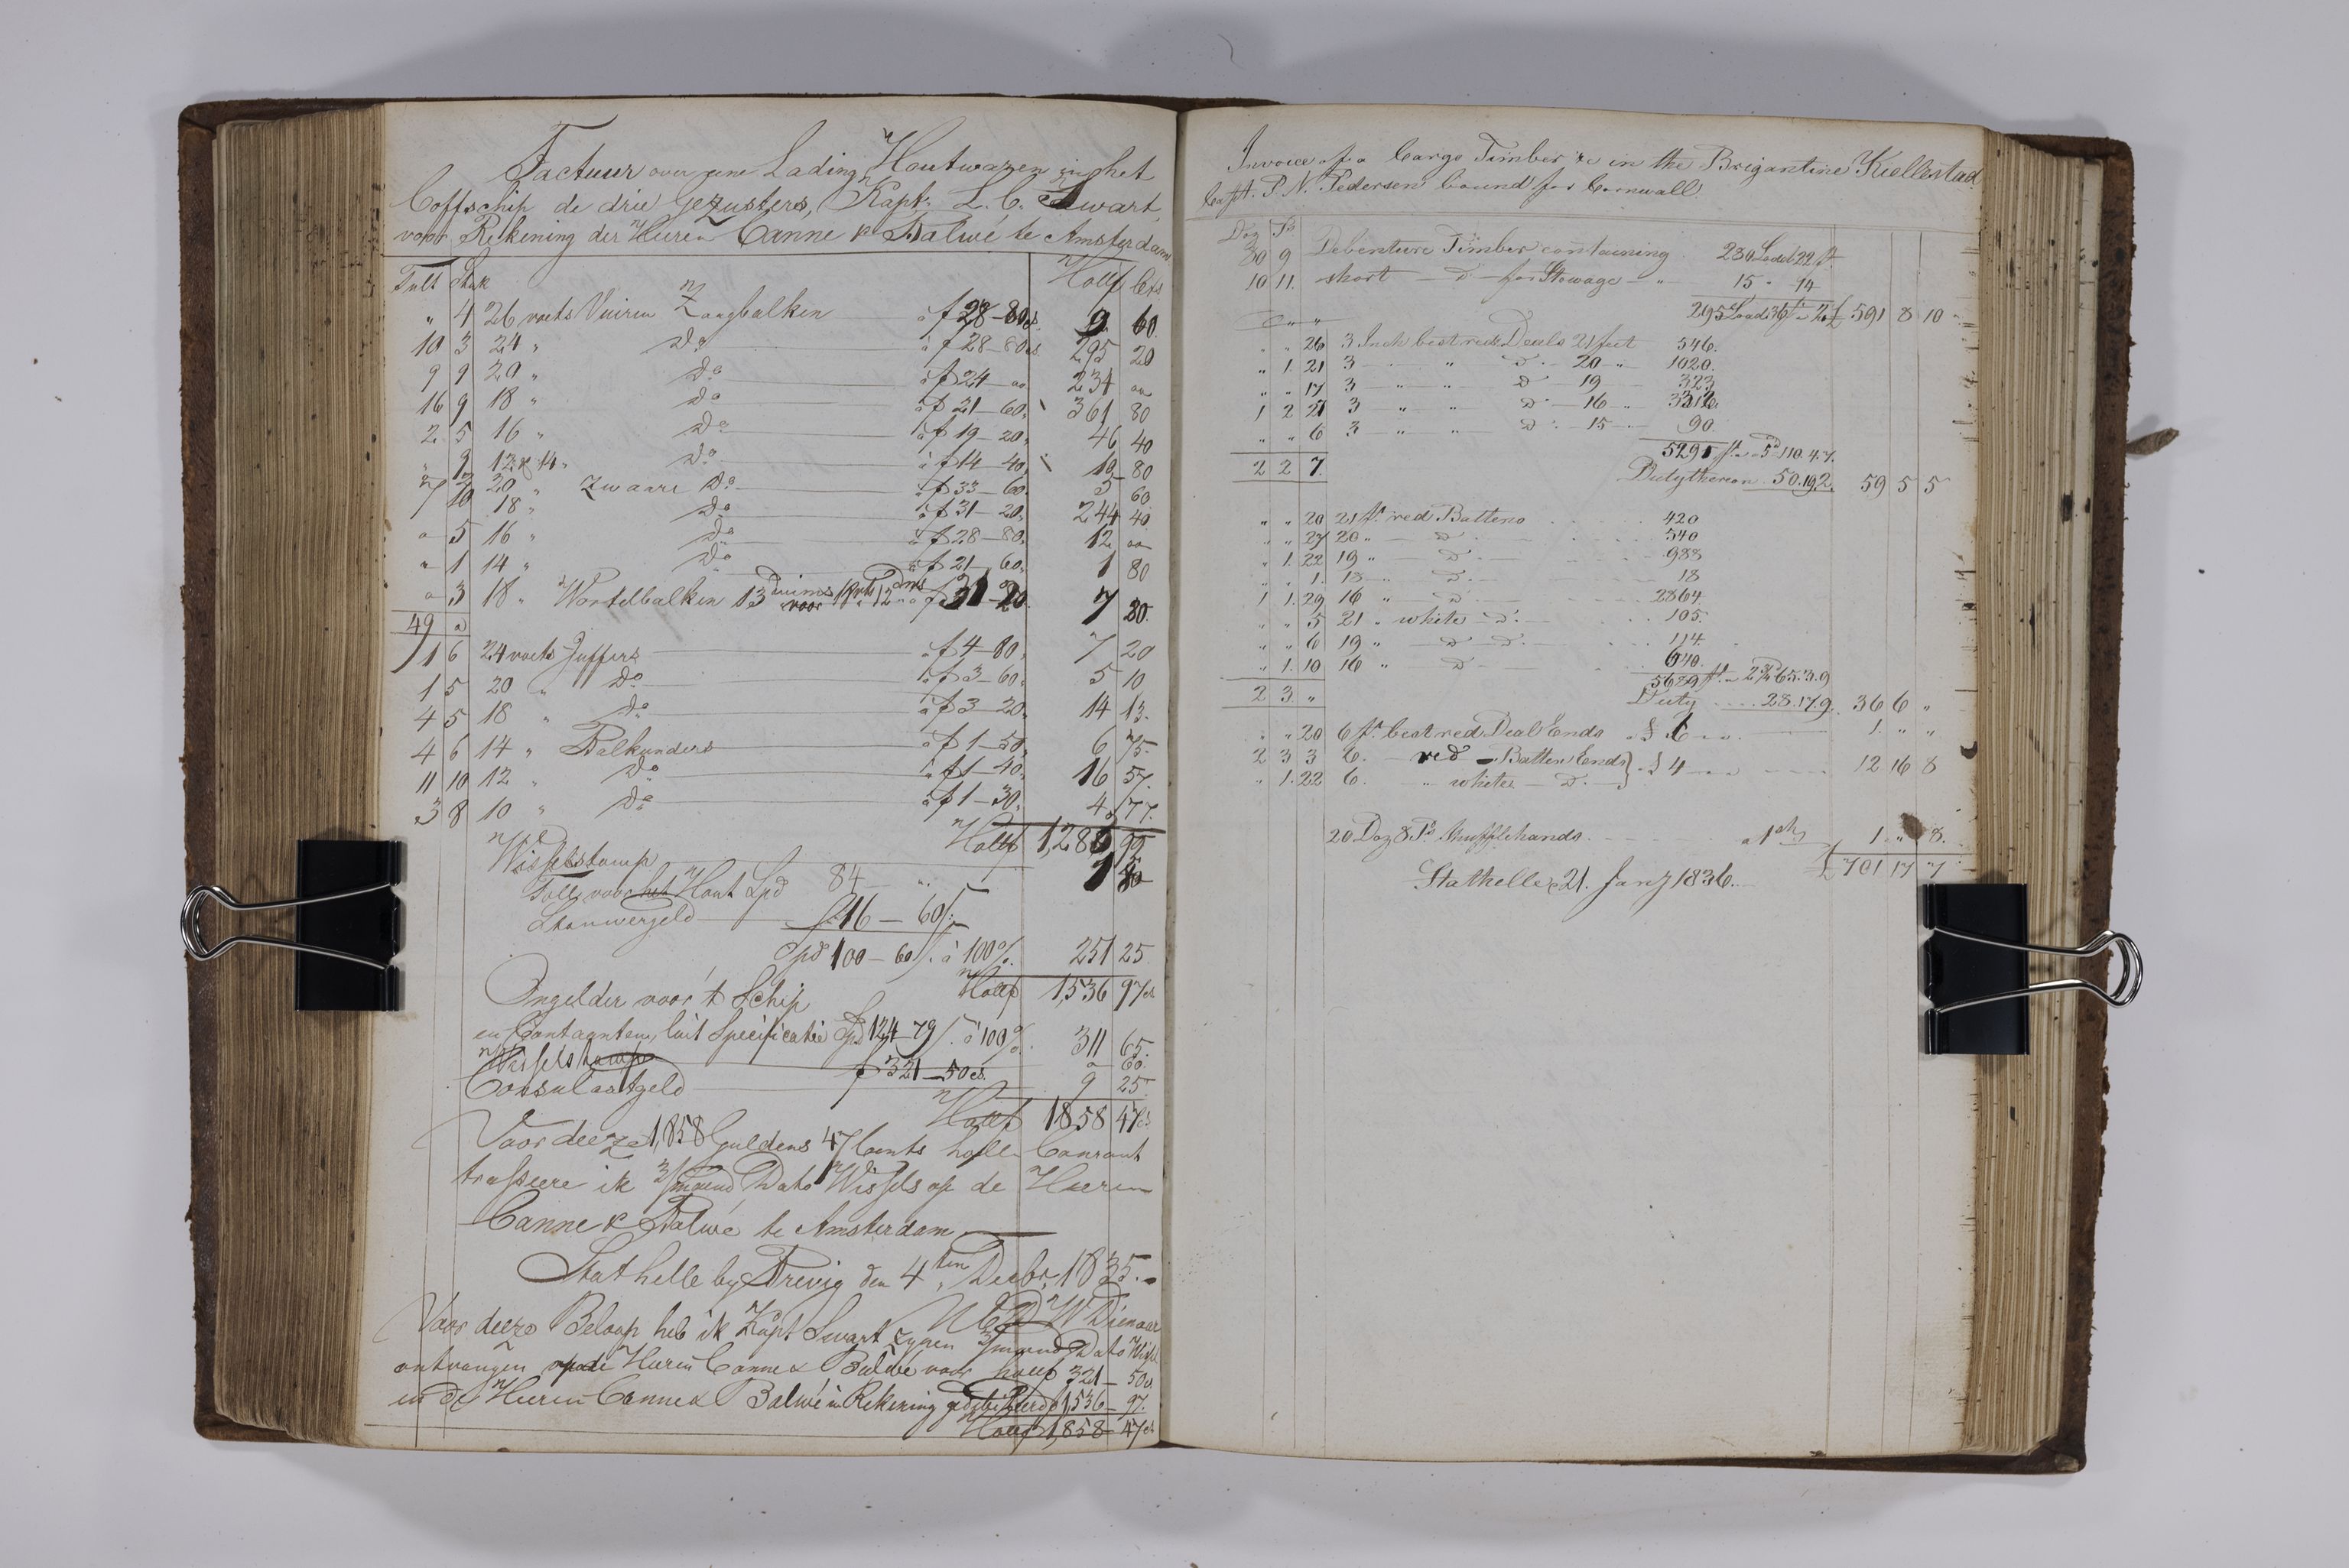 , Priscourant-tømmerpriser, 1834-38, 1834-1838, s. 218